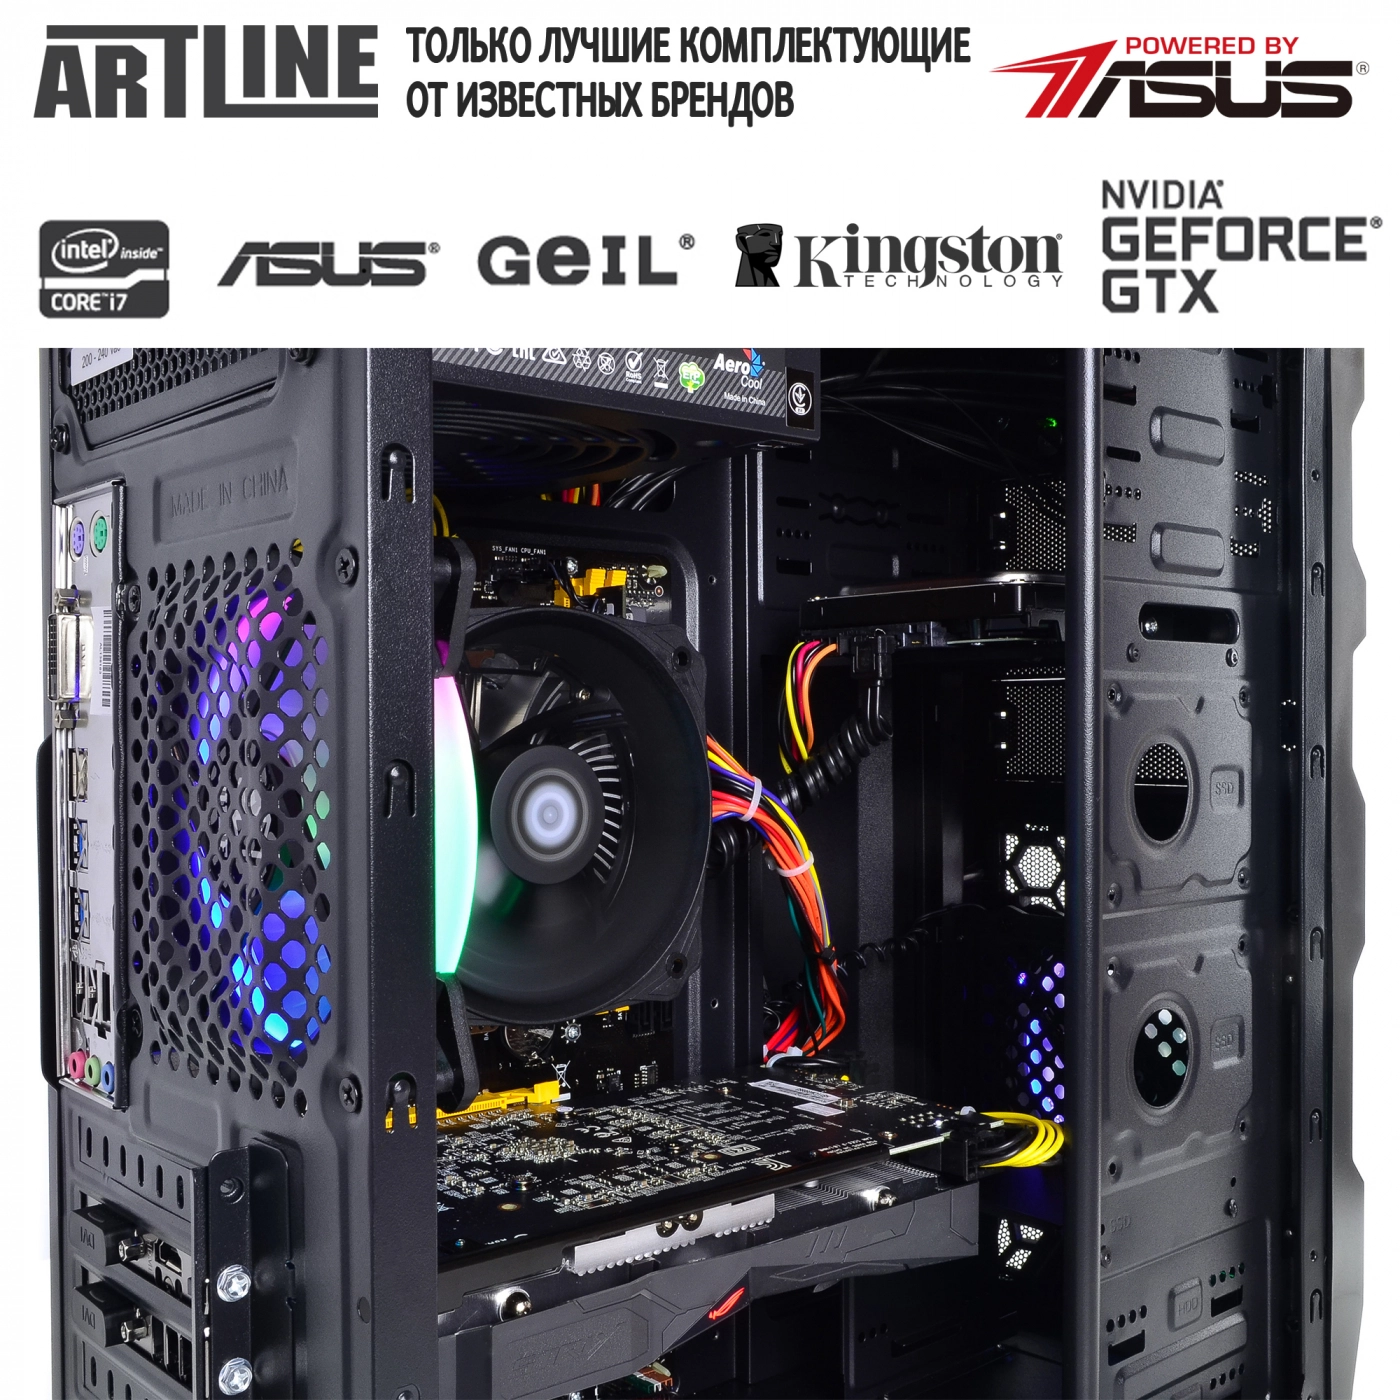 Купить Компьютер ARTLINE Gaming X45v23 - фото 6